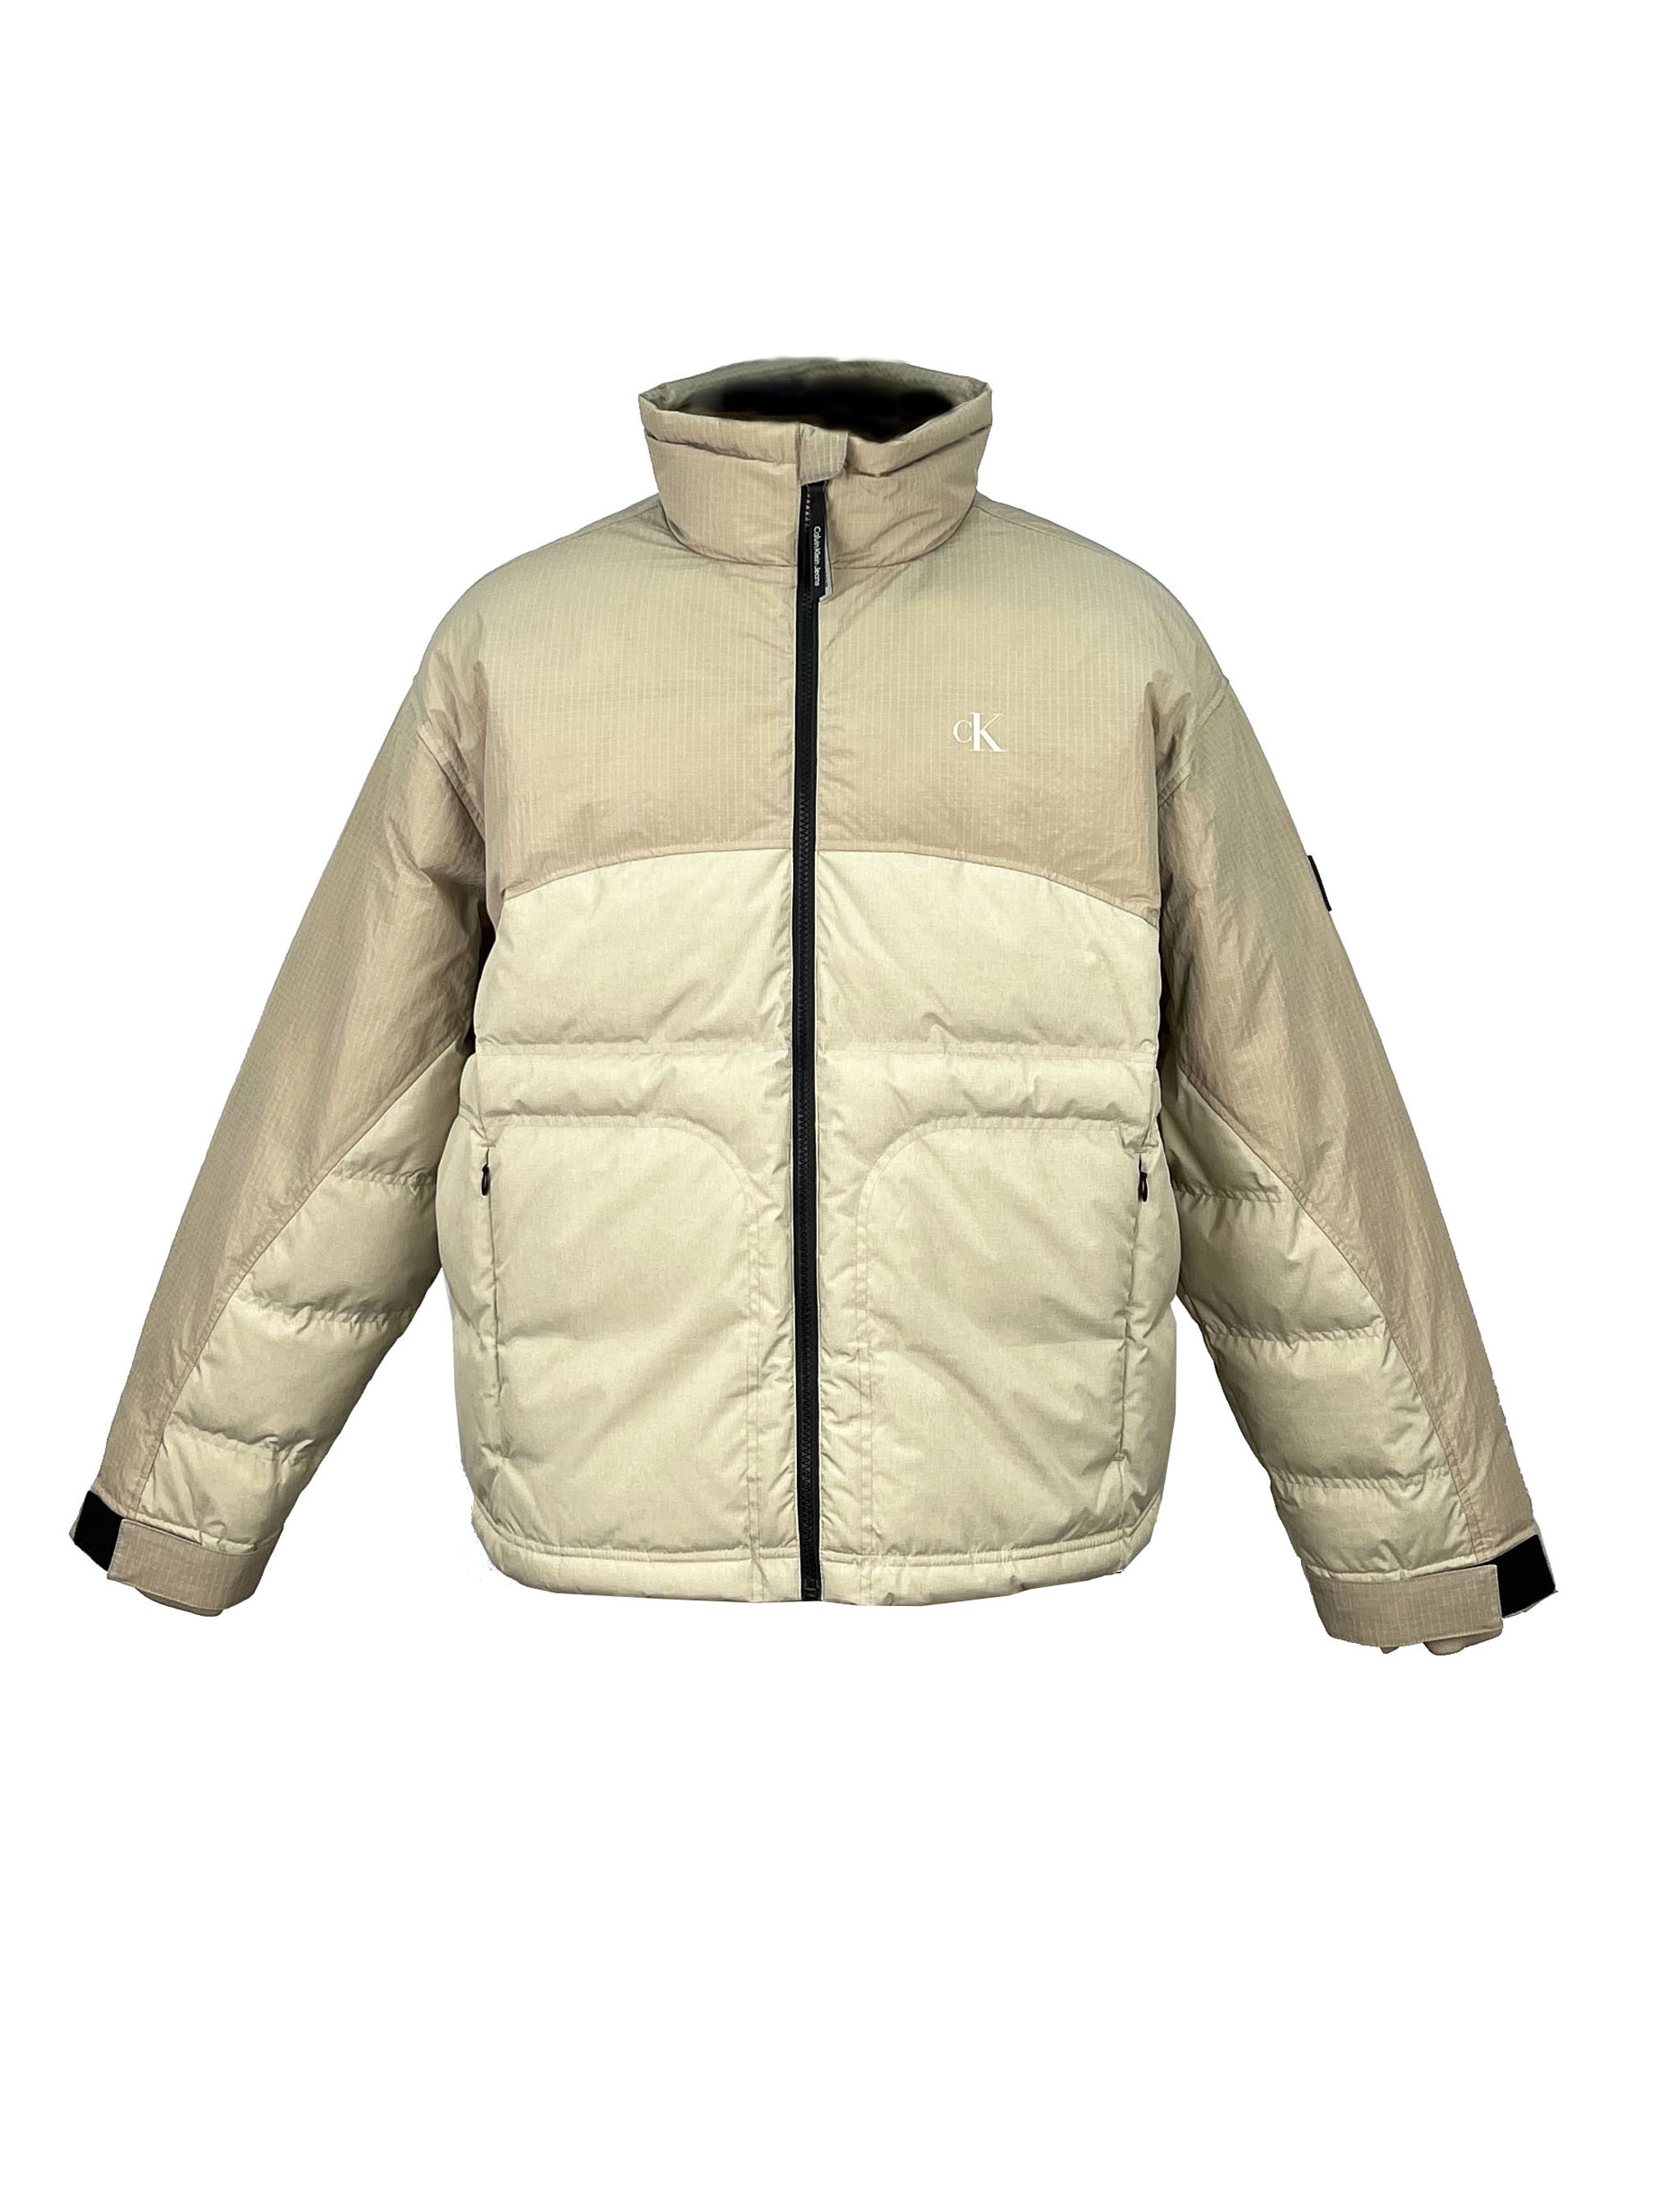 4.padded jacket. (1)